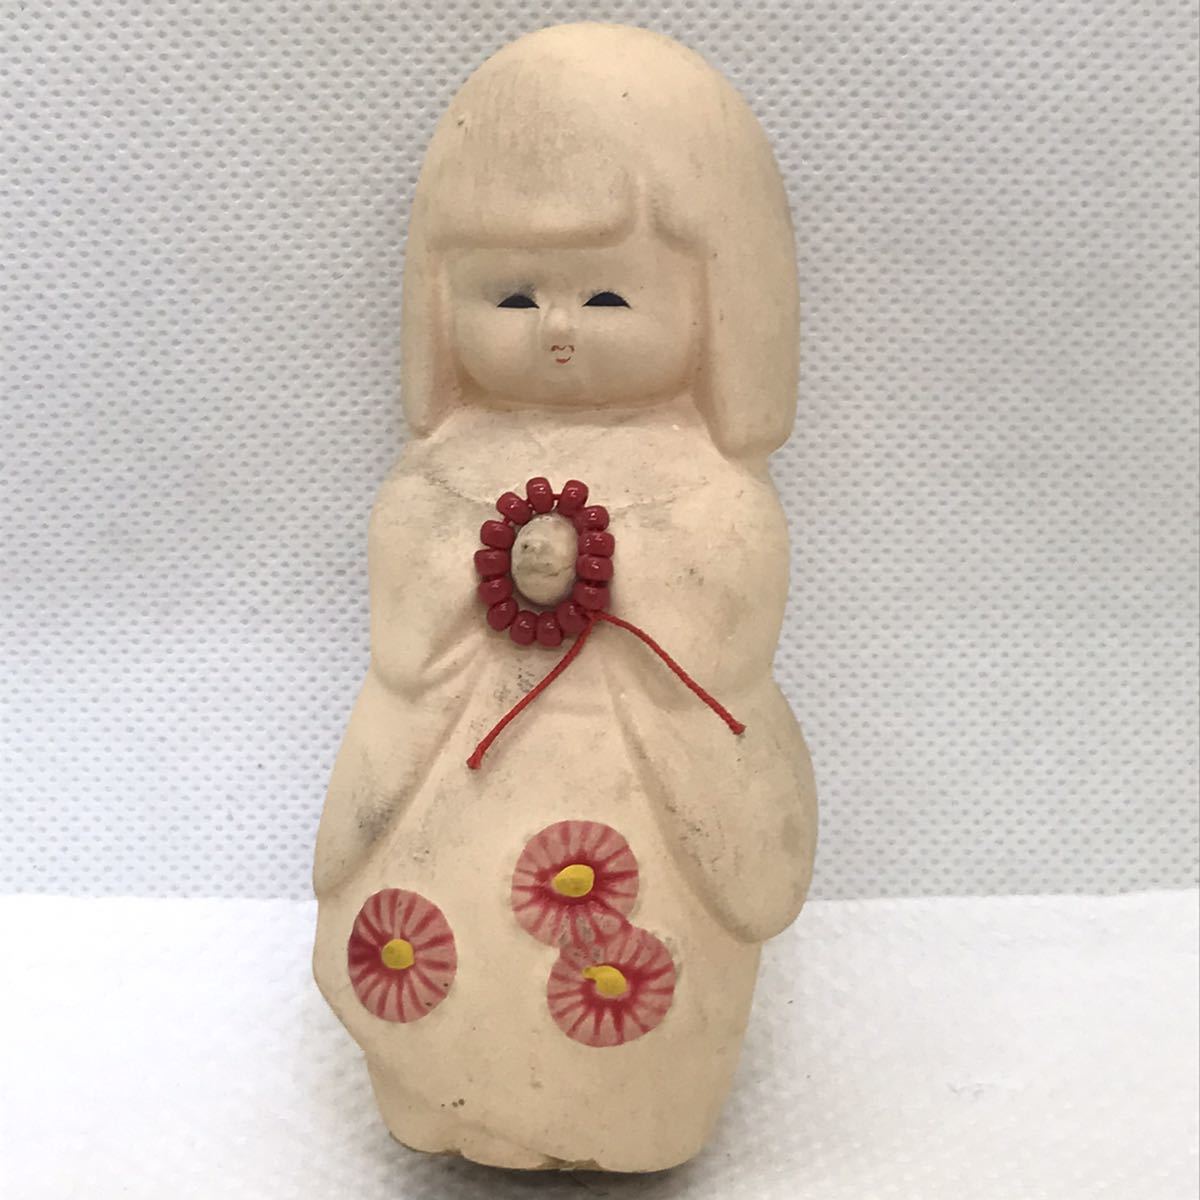 和風 和人形 日本人形 陶器人形 焼き物 工芸品 置物 アンティーク 郷土玩具 土人形